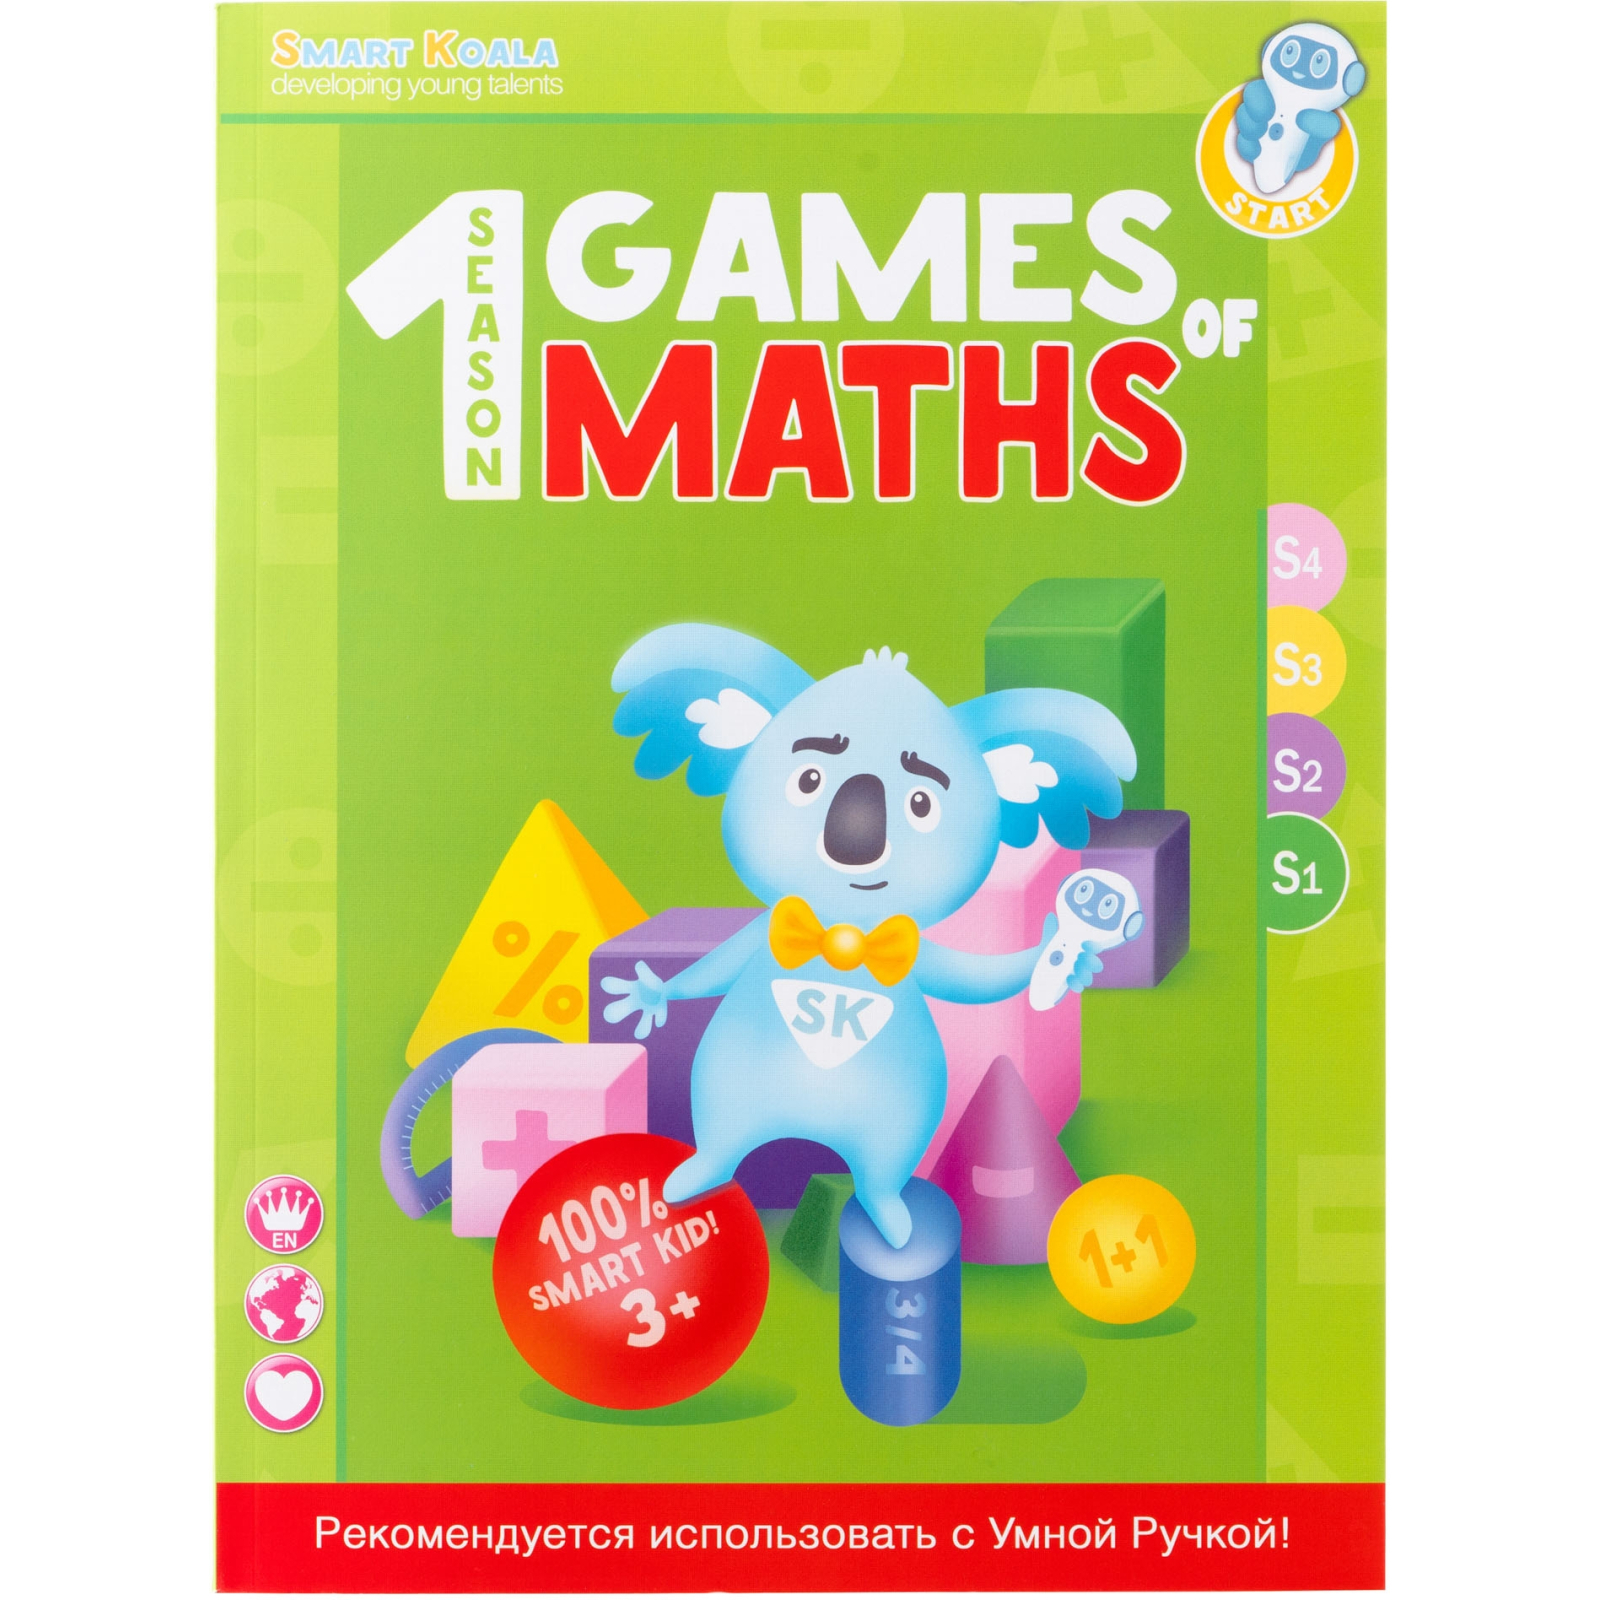 Интерактивная игрушка Smart Koala Набор интерактивных книг "Игры математики" 1-4 сезон (SKB1234GM) изображение 3